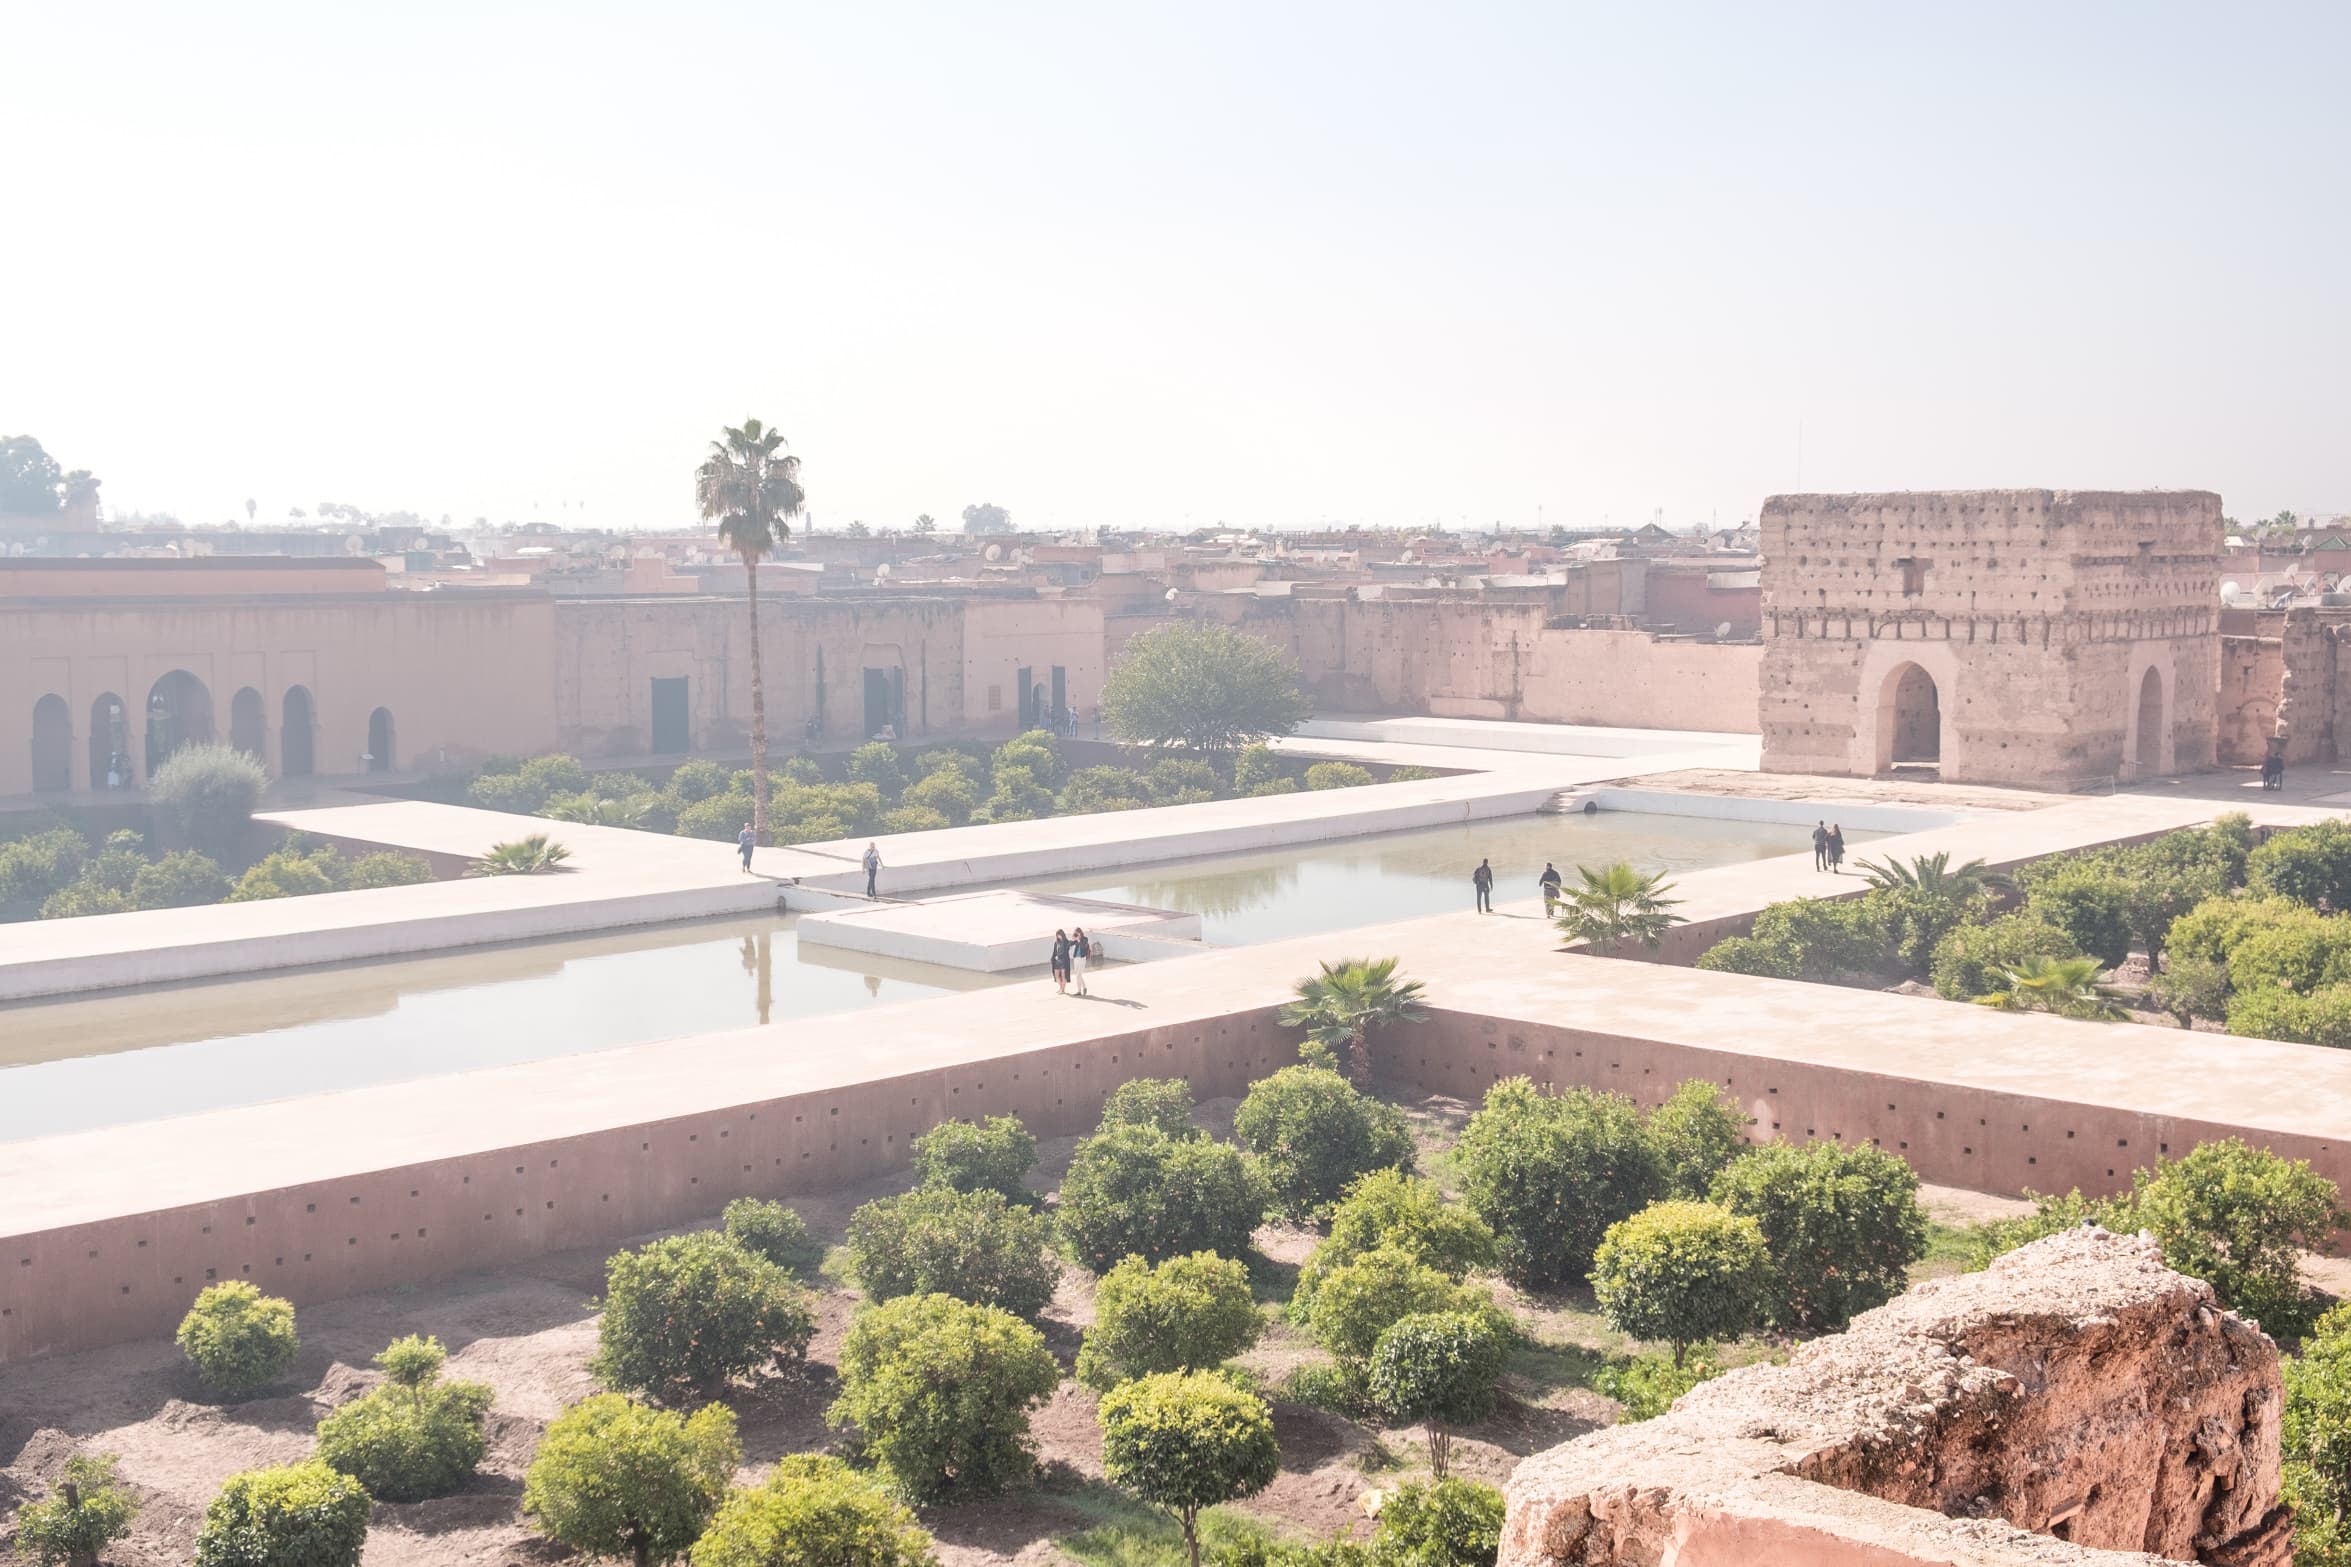 El Badi palace gardens from the walls